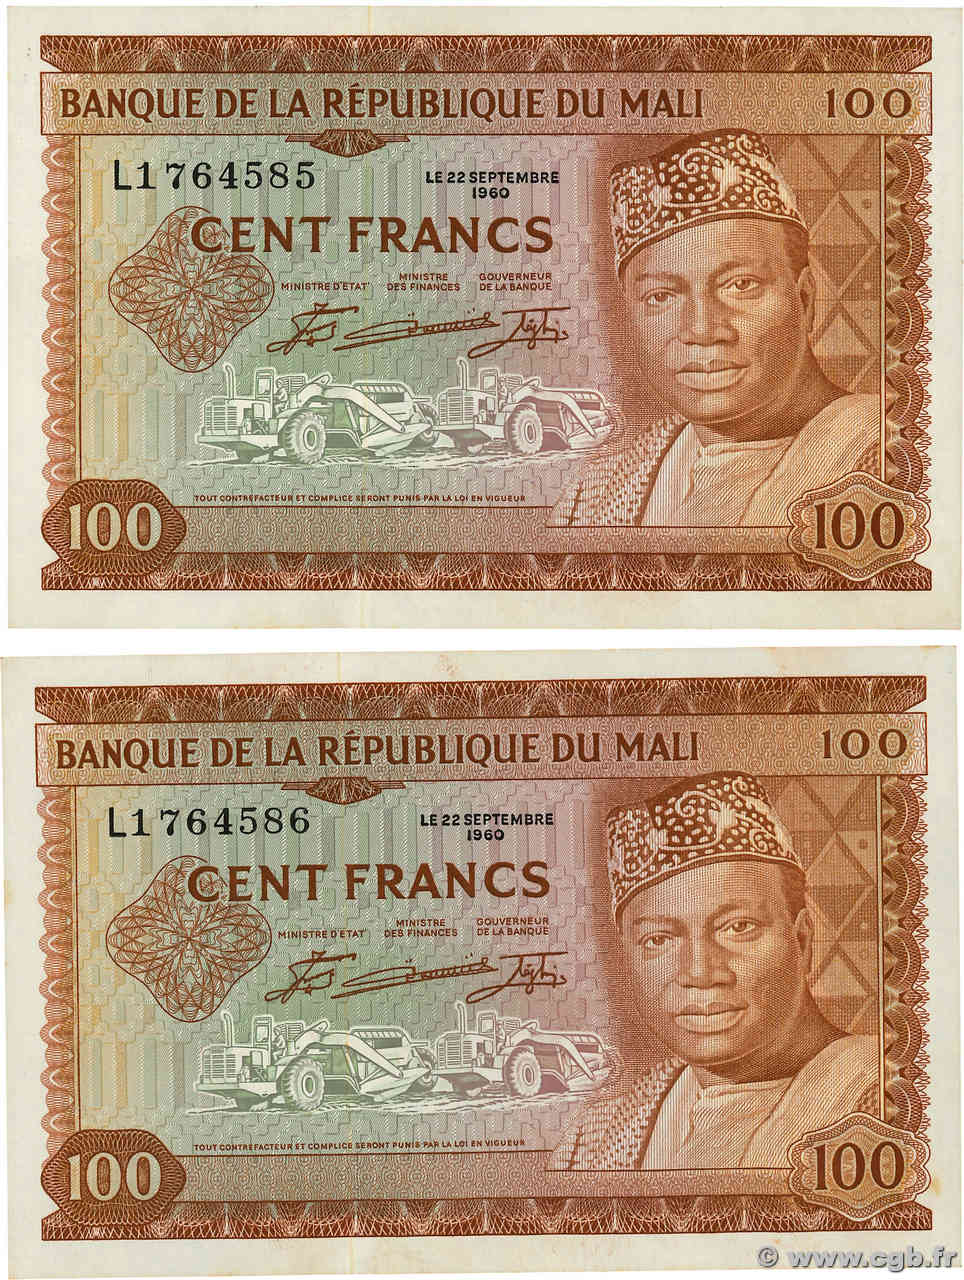 Seine-Saint-Denis : Les malfaiteurs écoulaient des faux billets de 100 euros  dans les grands magasins